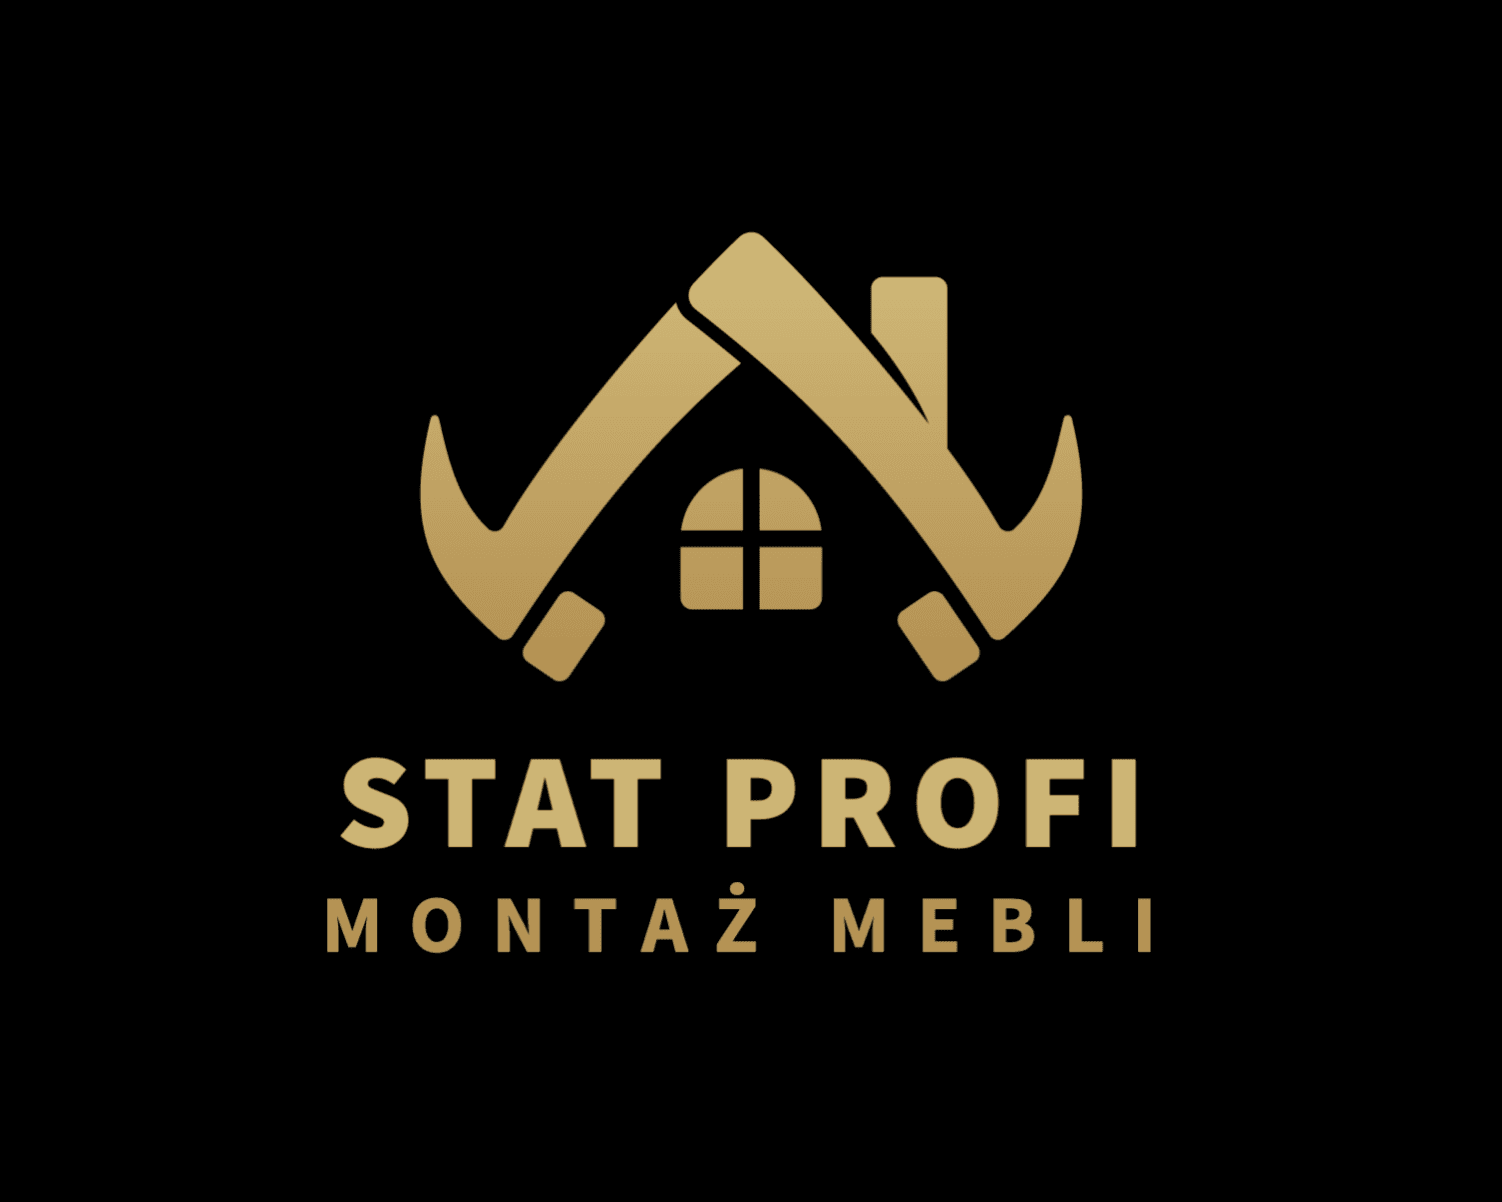 STAT PROFI ALIAKSANDR STATKEVICH-logo